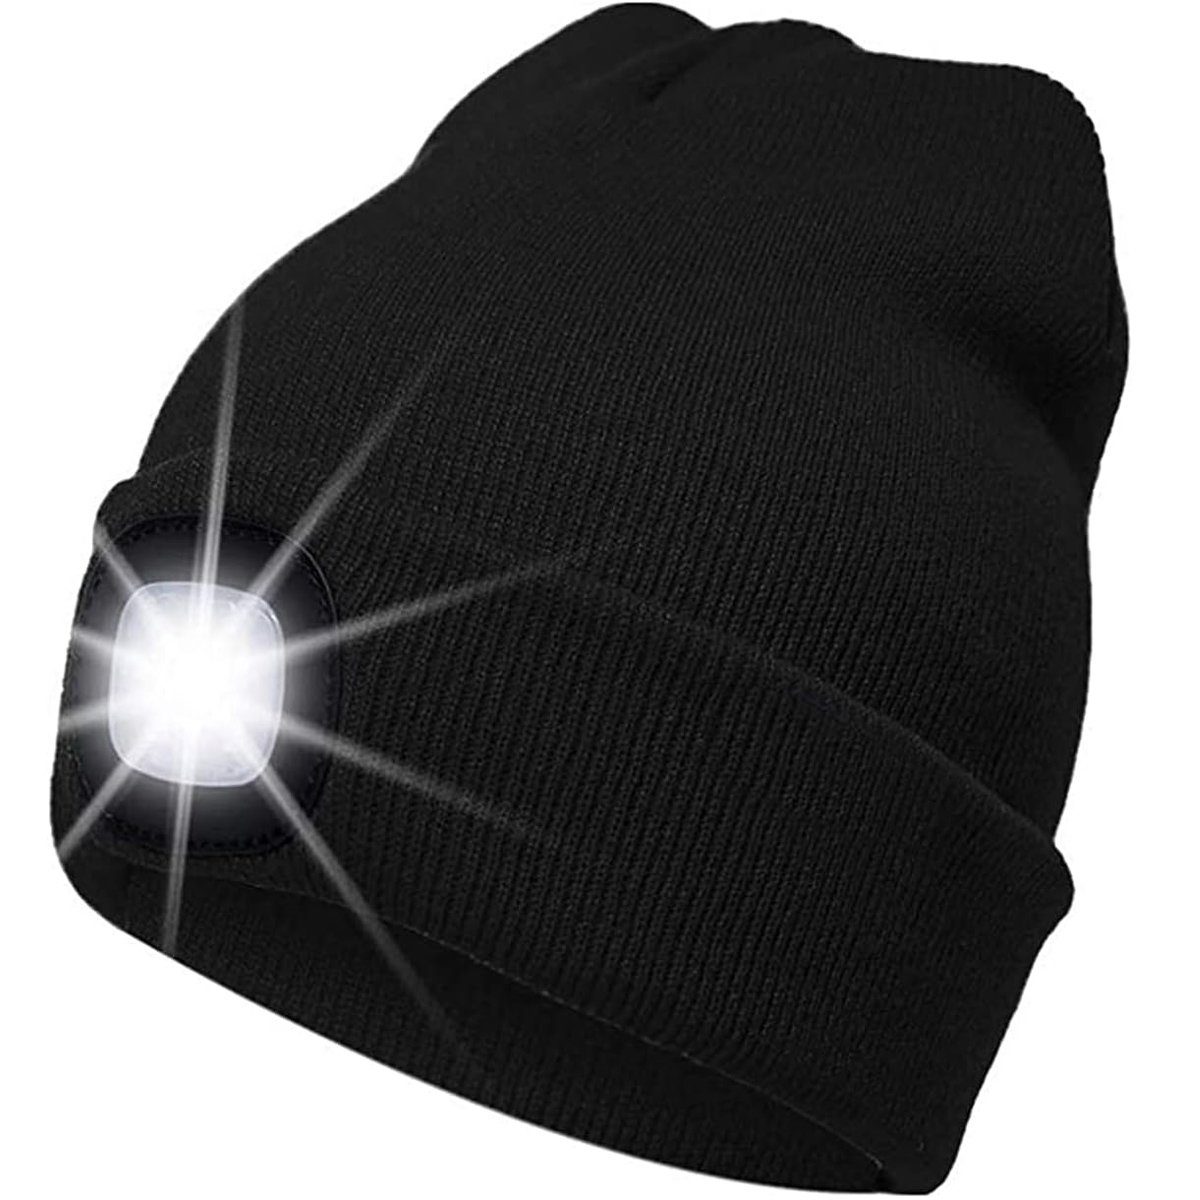 zggzerg LED Schwarz USB Licht mit Laufmütze Mütze, Beleuchtete Stirnlampe Warme Lampe Stirnlampe LED